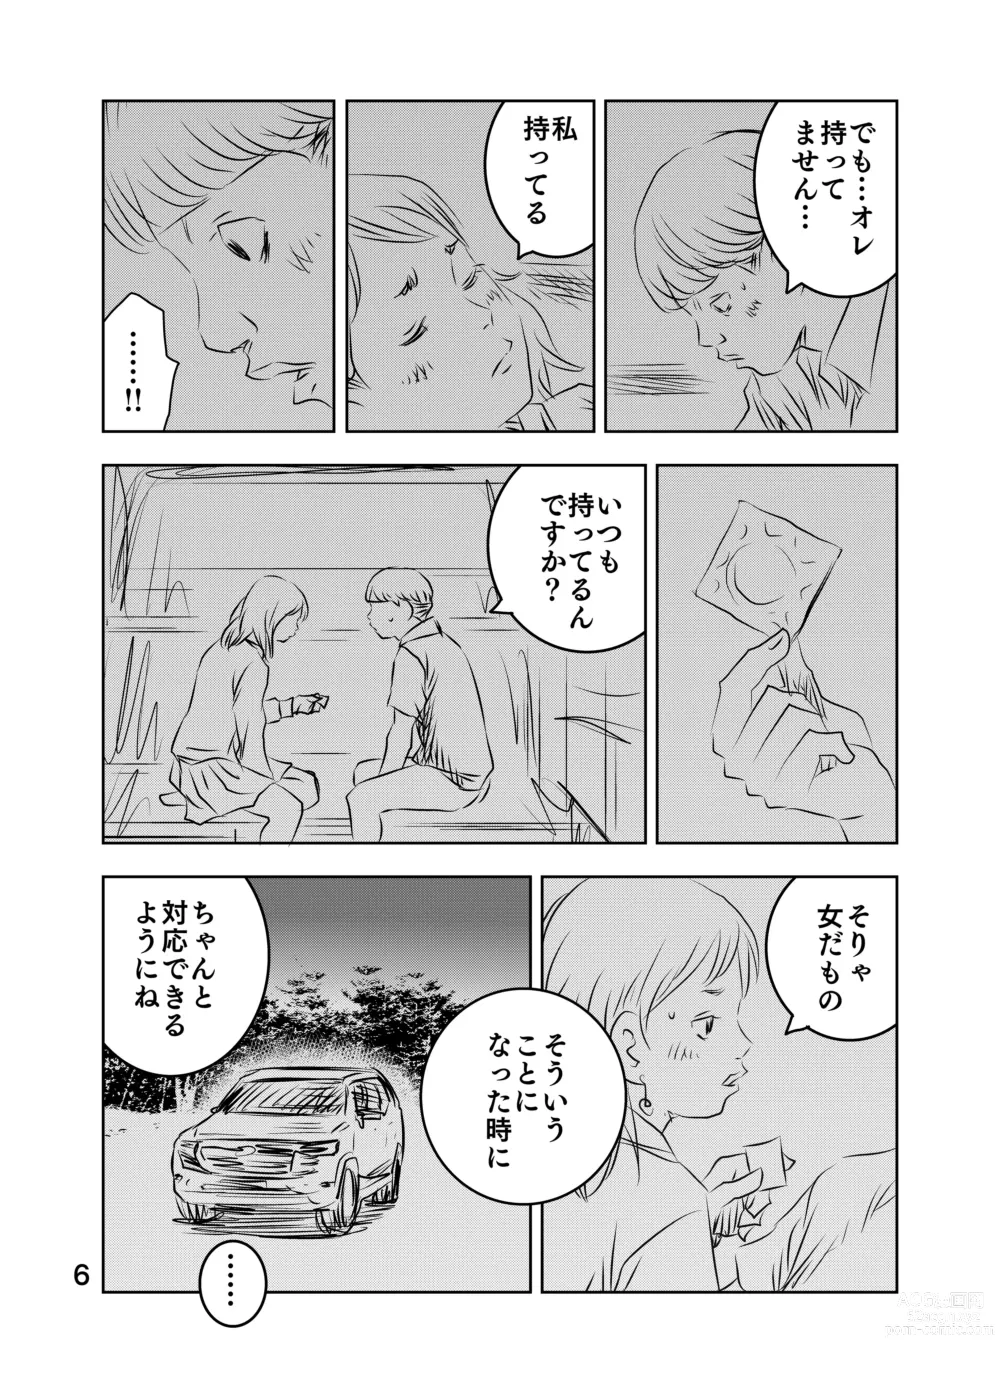 Page 72 of doujinshi Zurui Hito-tachi